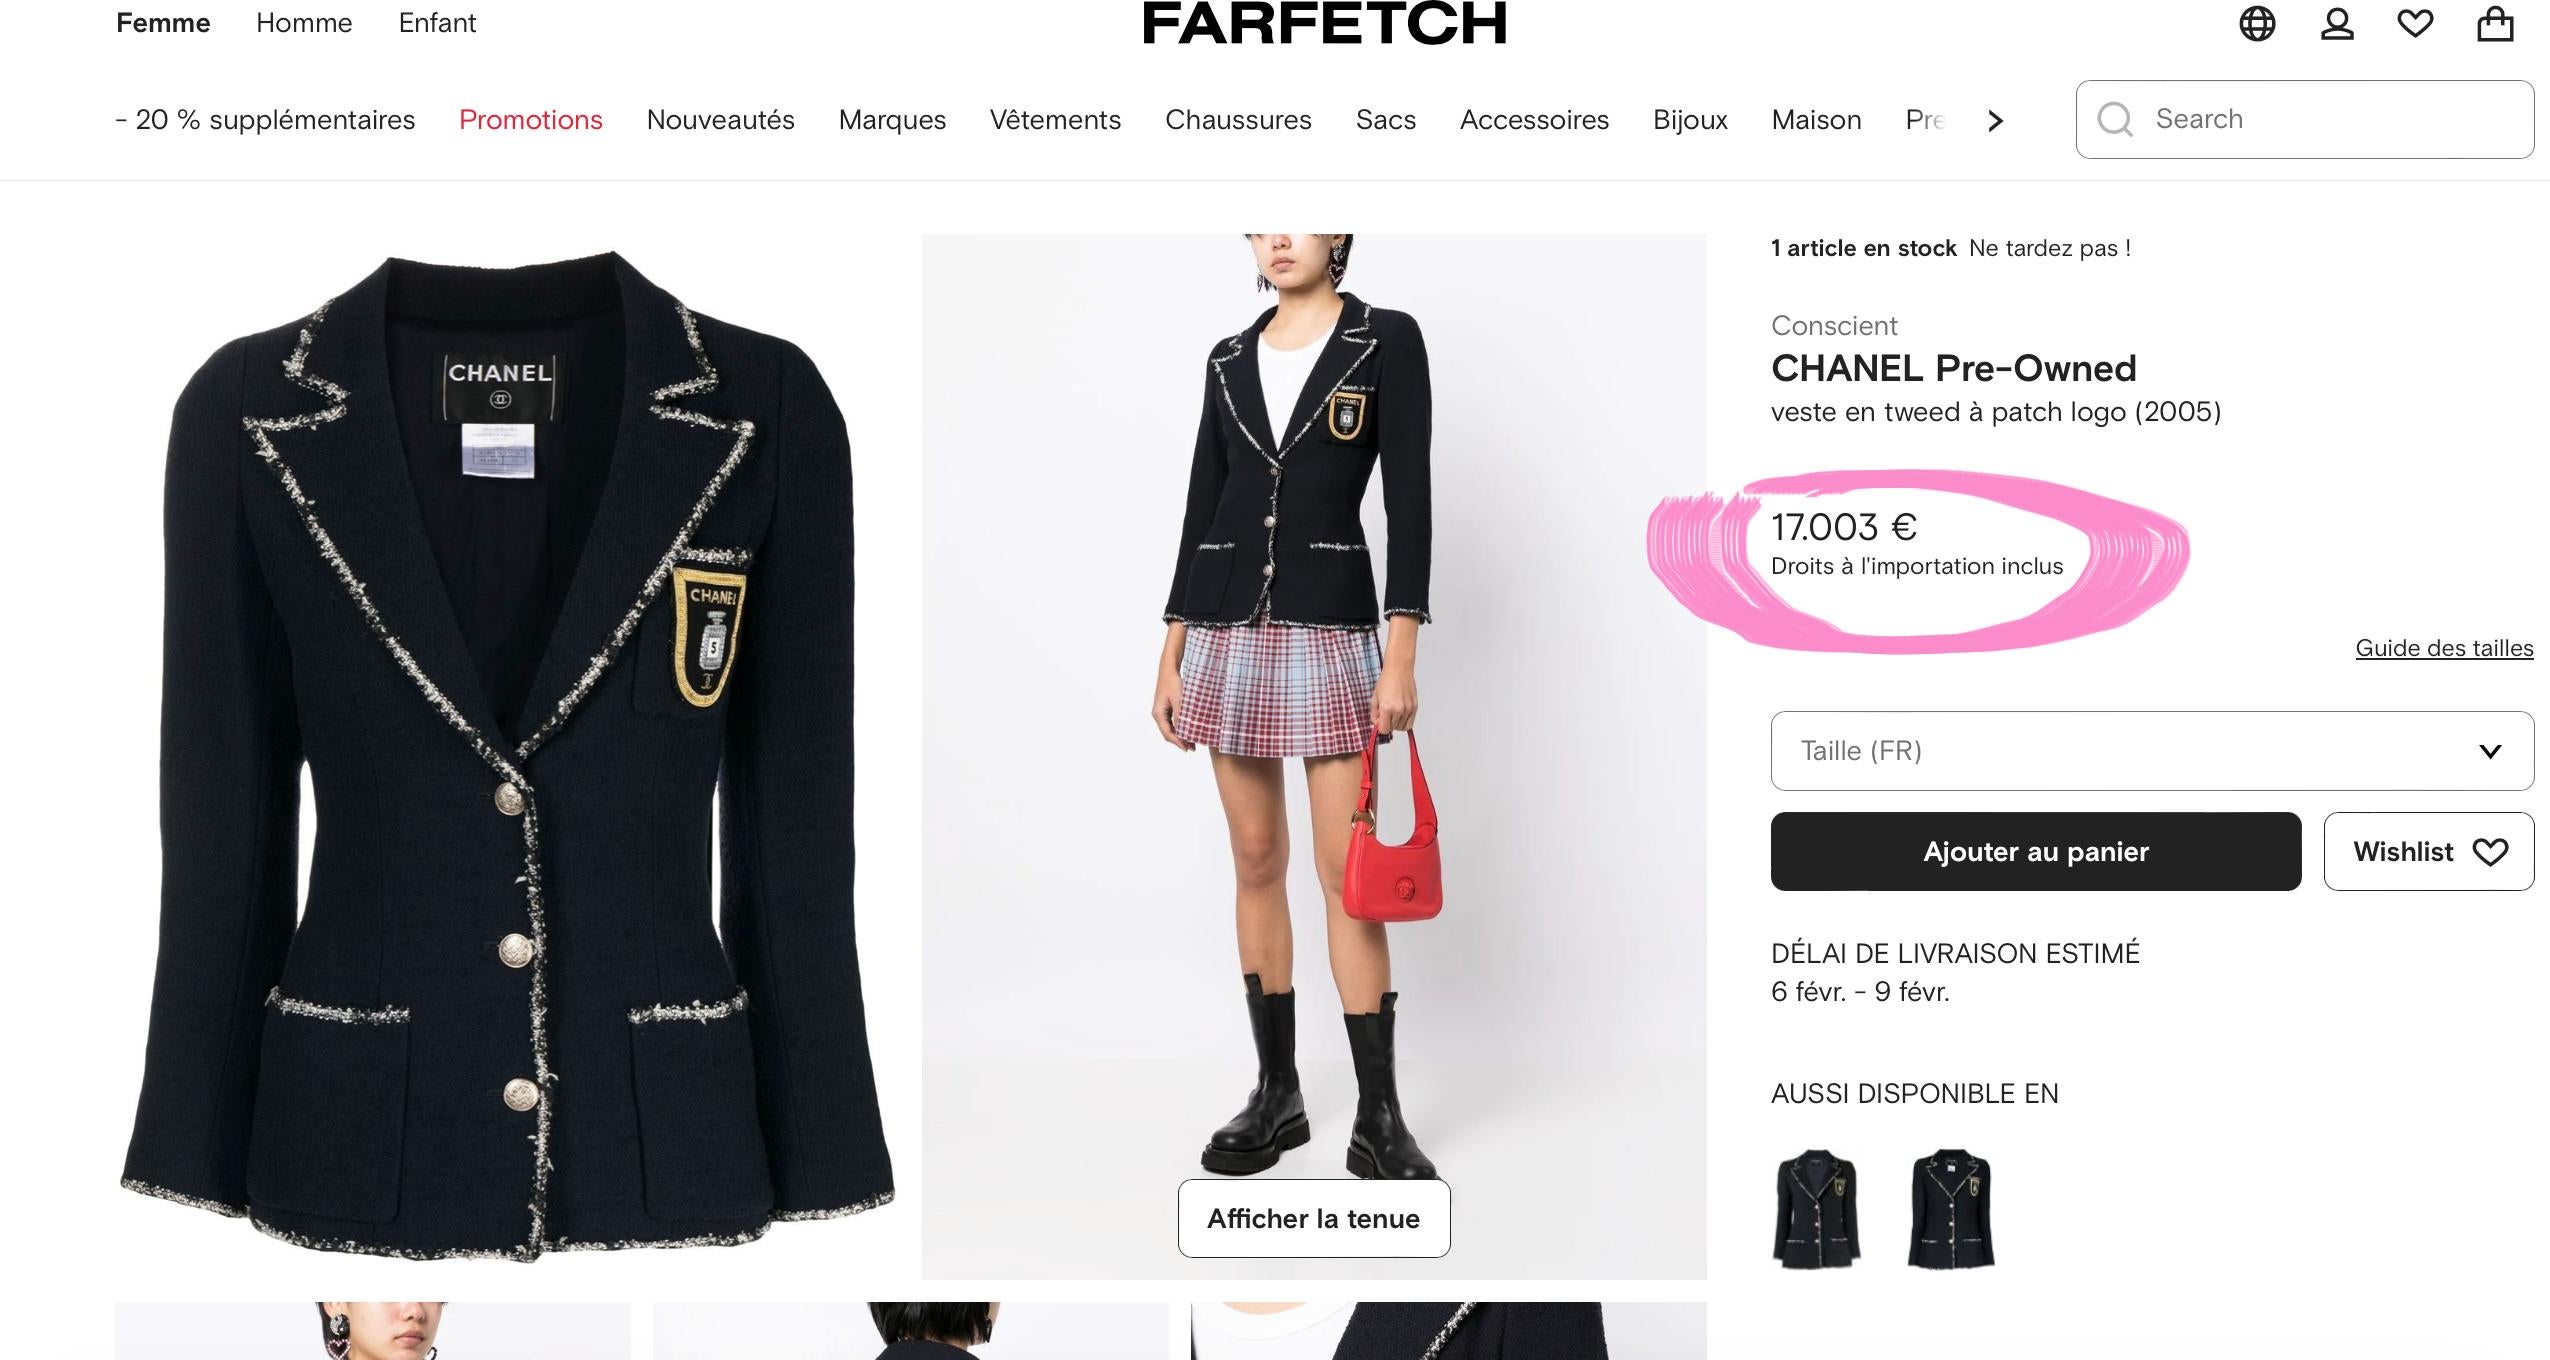 La plus recherchée des vestes Chanel en tweed noir avec le CC Logo Patch -- vue dans le film Le Diable s'habille en Prada !
- Prix sur farfetch de plus de 17 000 € pour un objet d'occasion
- de la Collectional 2005, 05C
- Boutons argentés avec logo